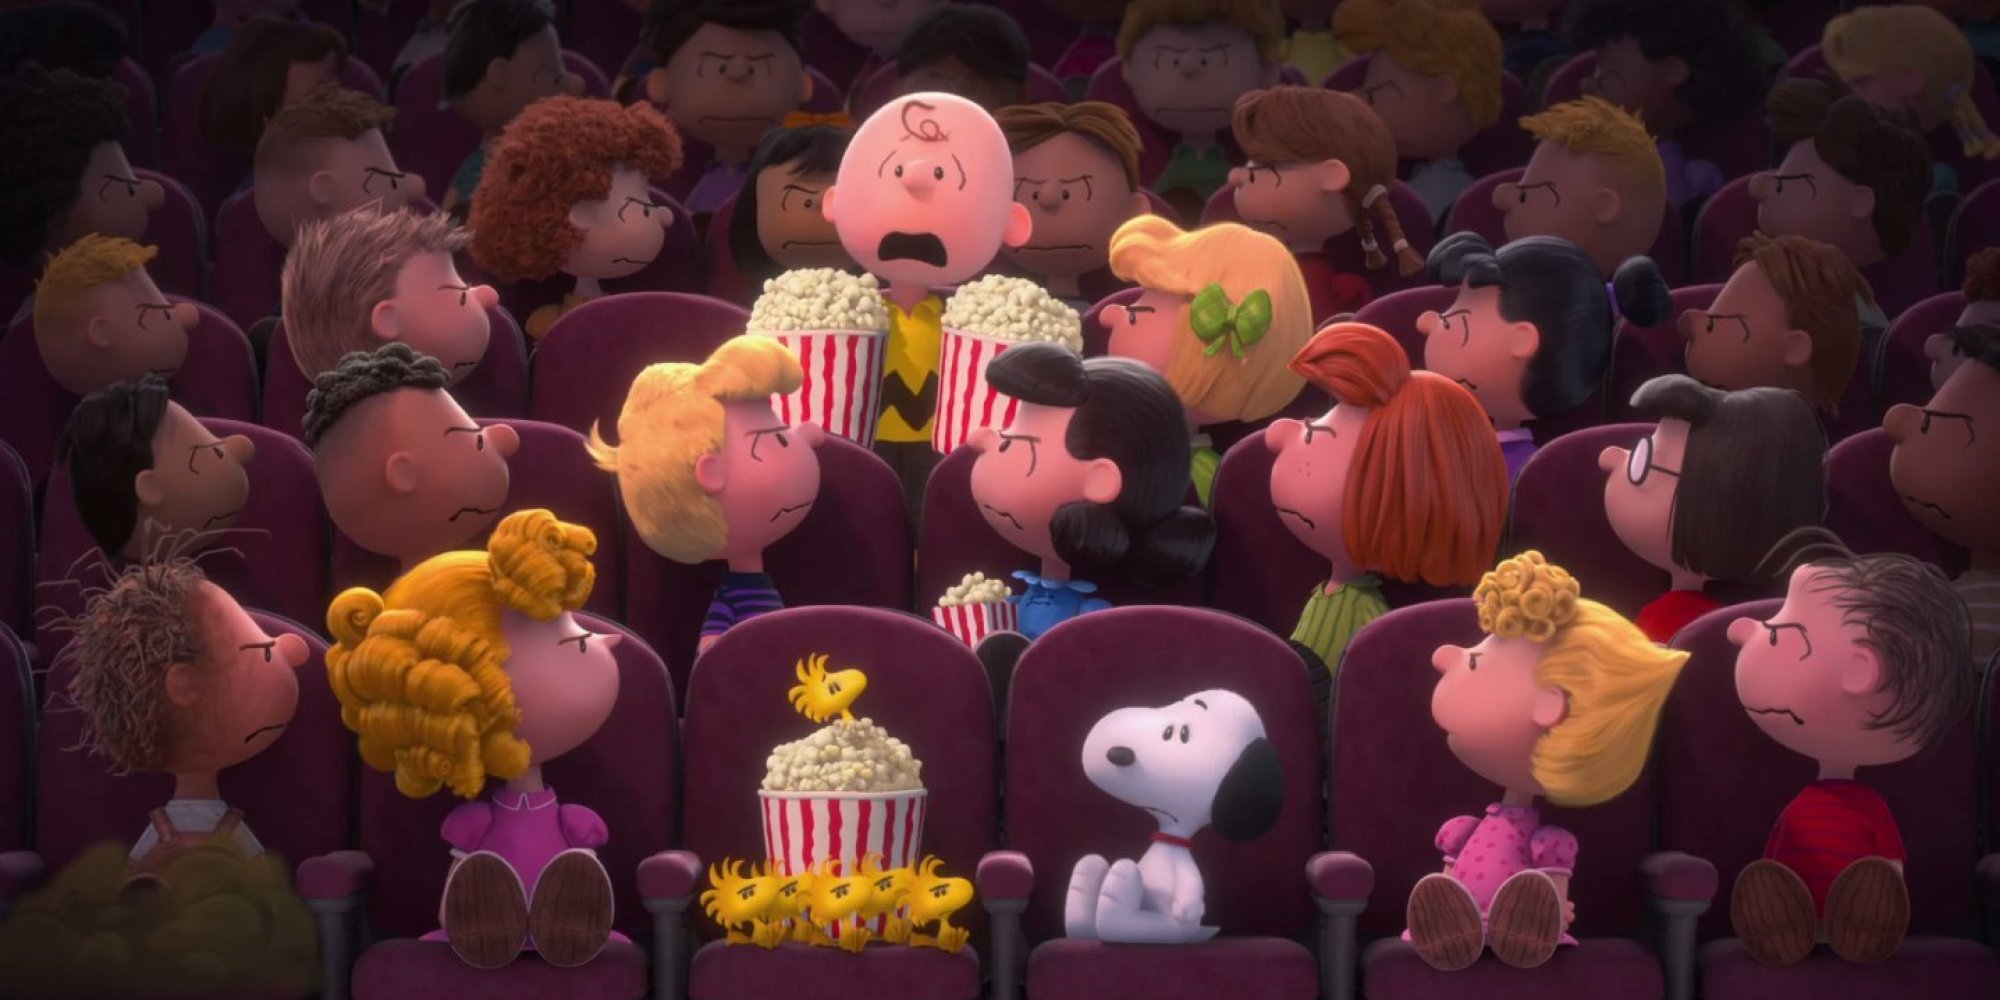 Trailer Oficial De Peanuts Con Charlie Brown Y Snoopy